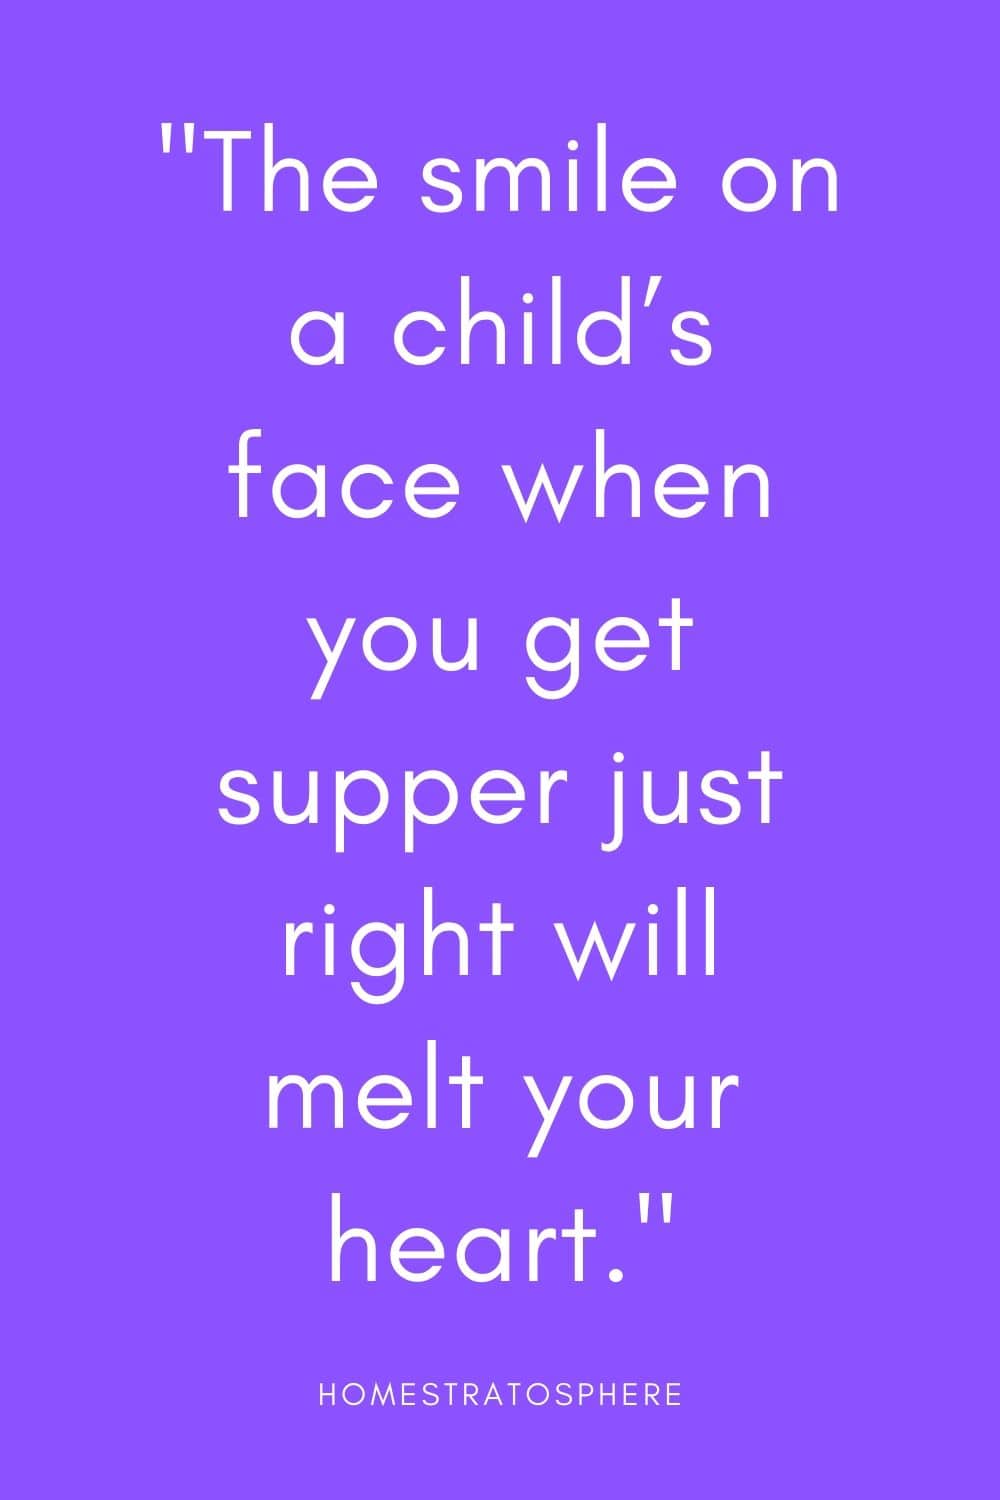 “当你准备好晚餐时，孩子脸上的微笑会融化你的心。”